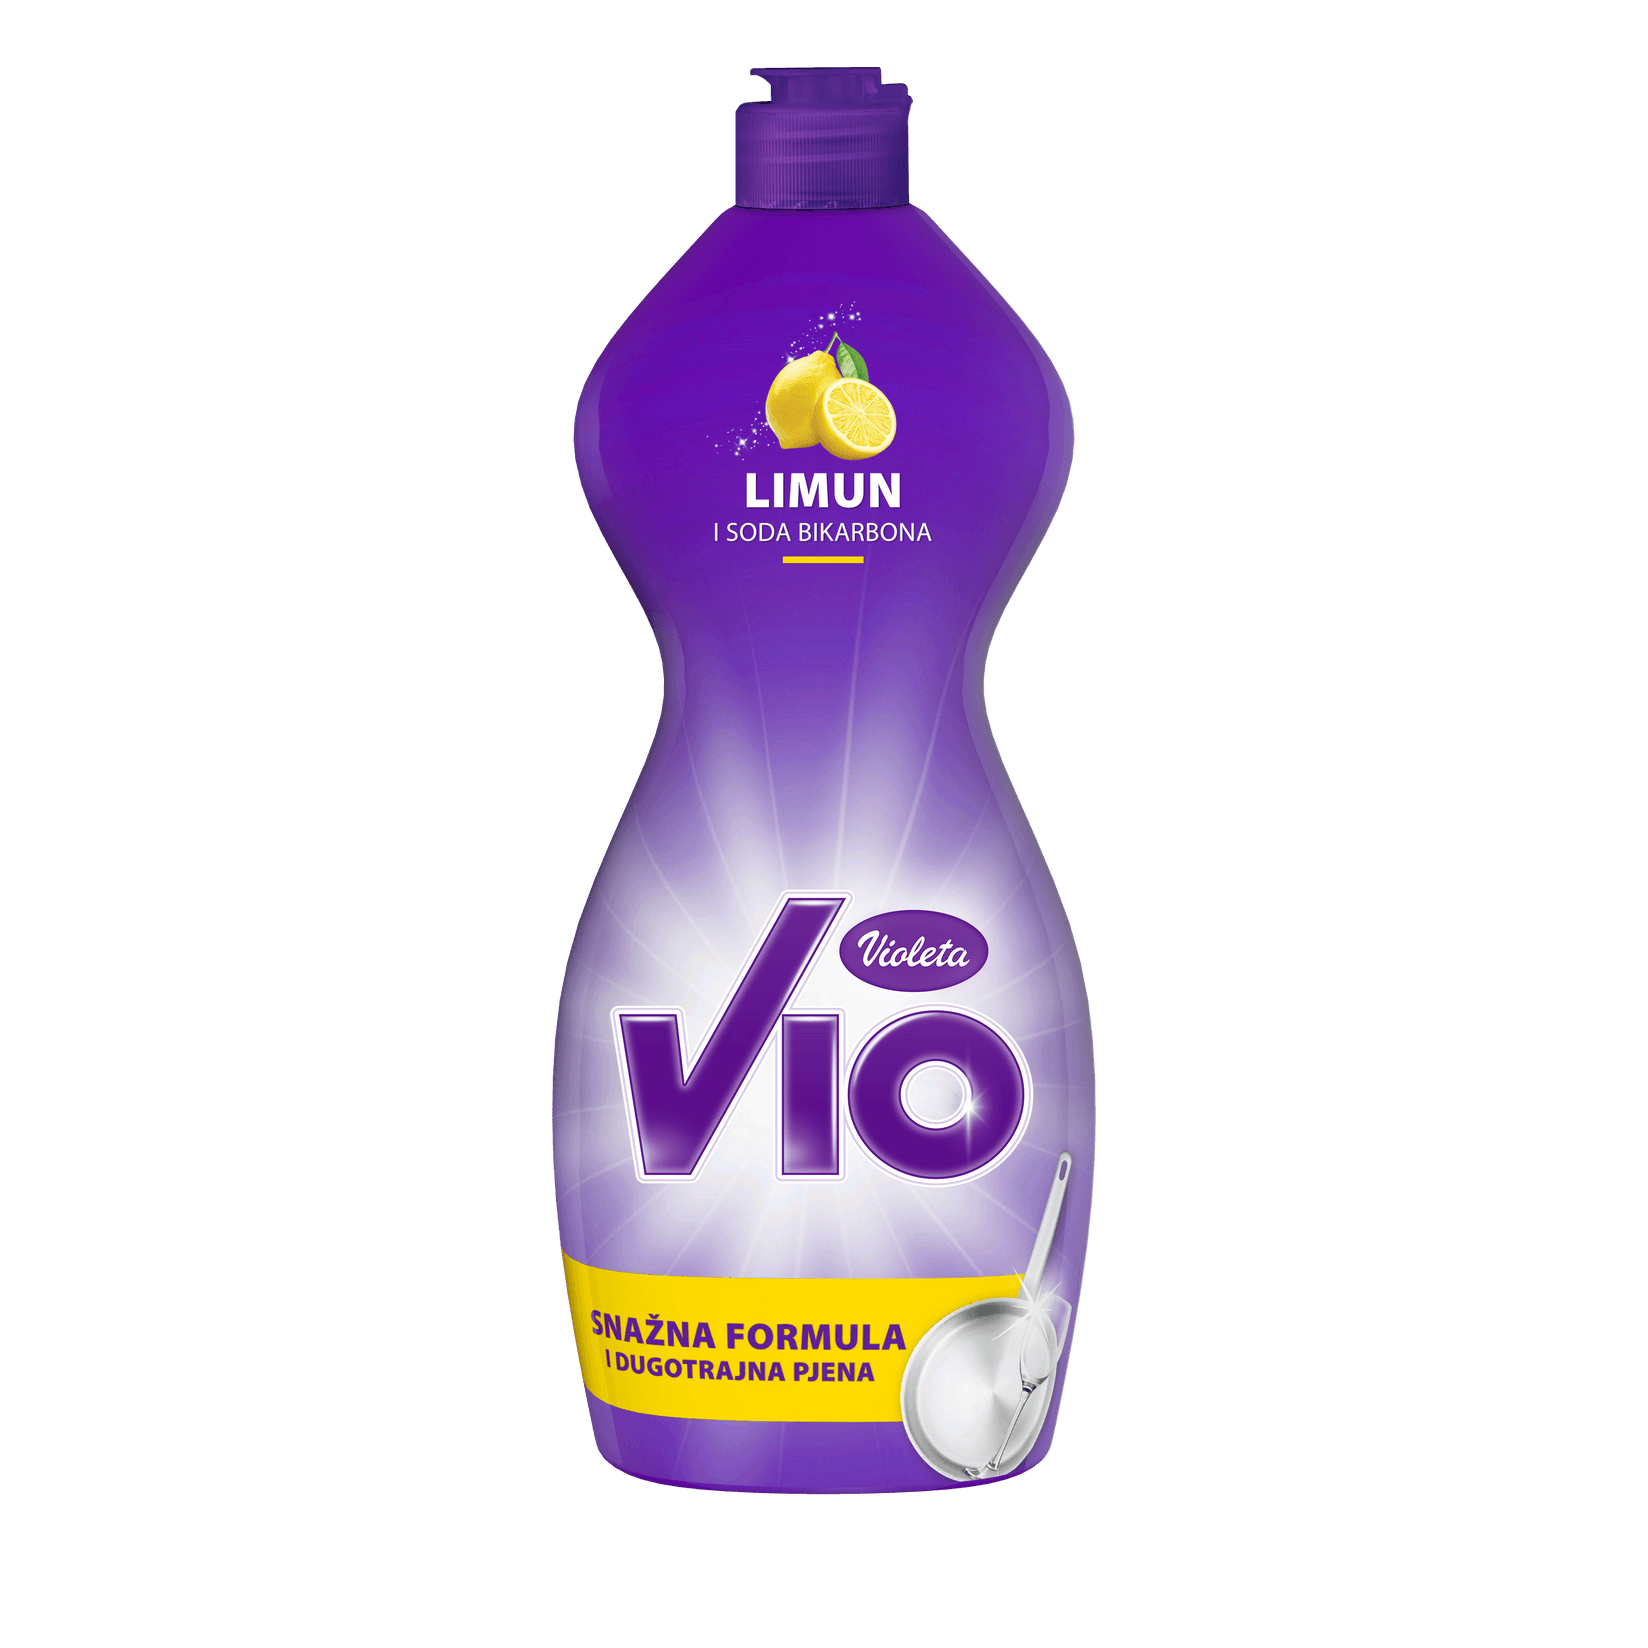 VIOLETA Vio детергент за садови лимон и сода бикарбона 0.45L